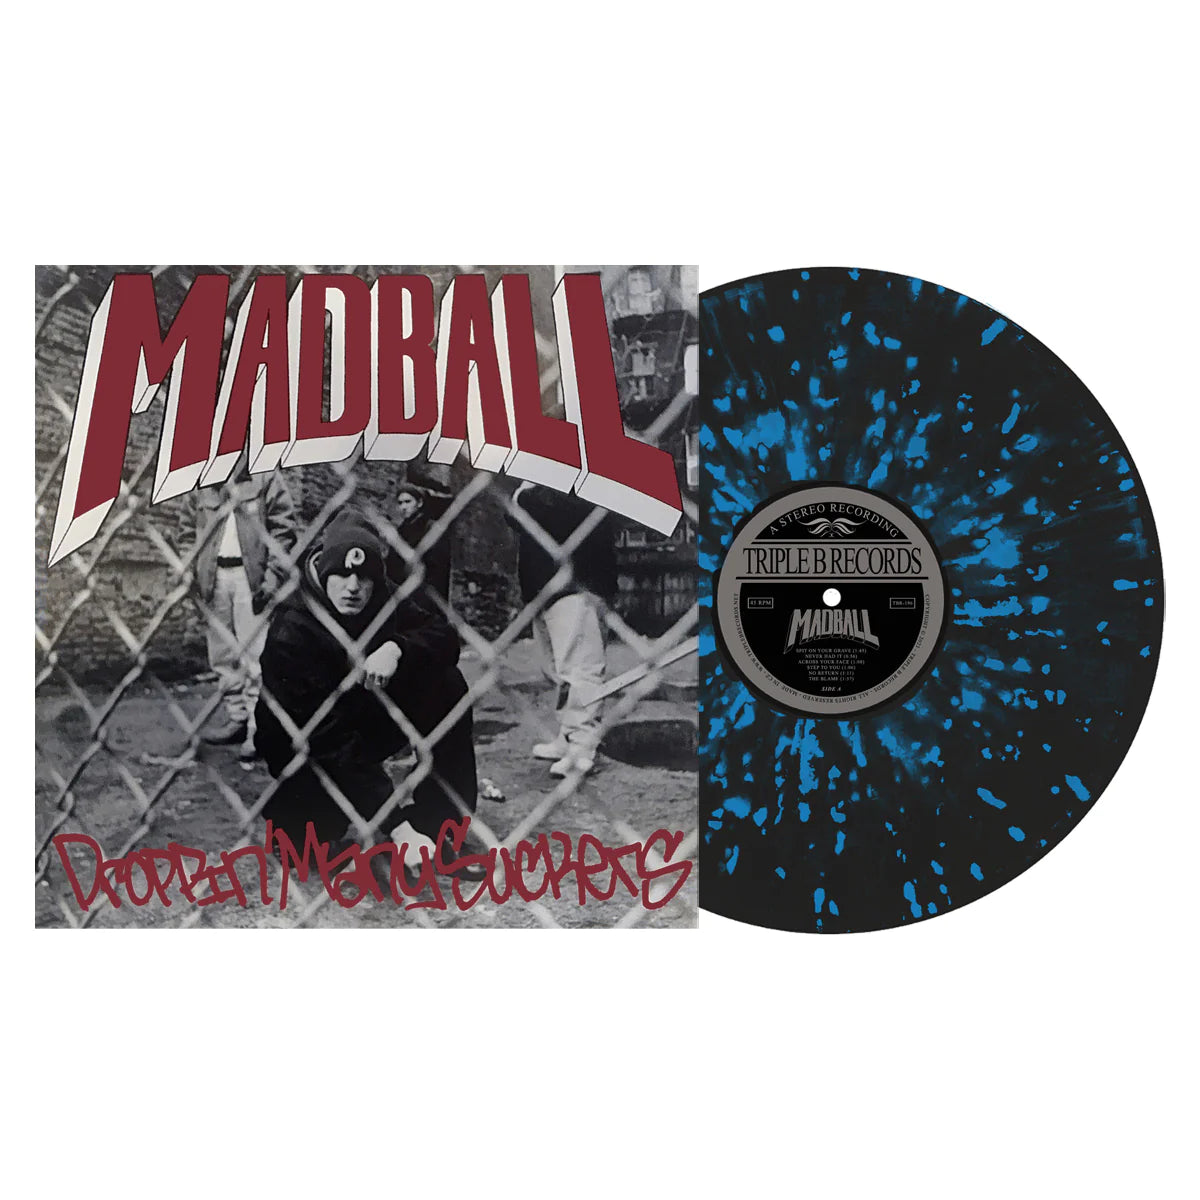 MADBALL - DROPPIN' MANY SUCKERS Vinyl 12" EP